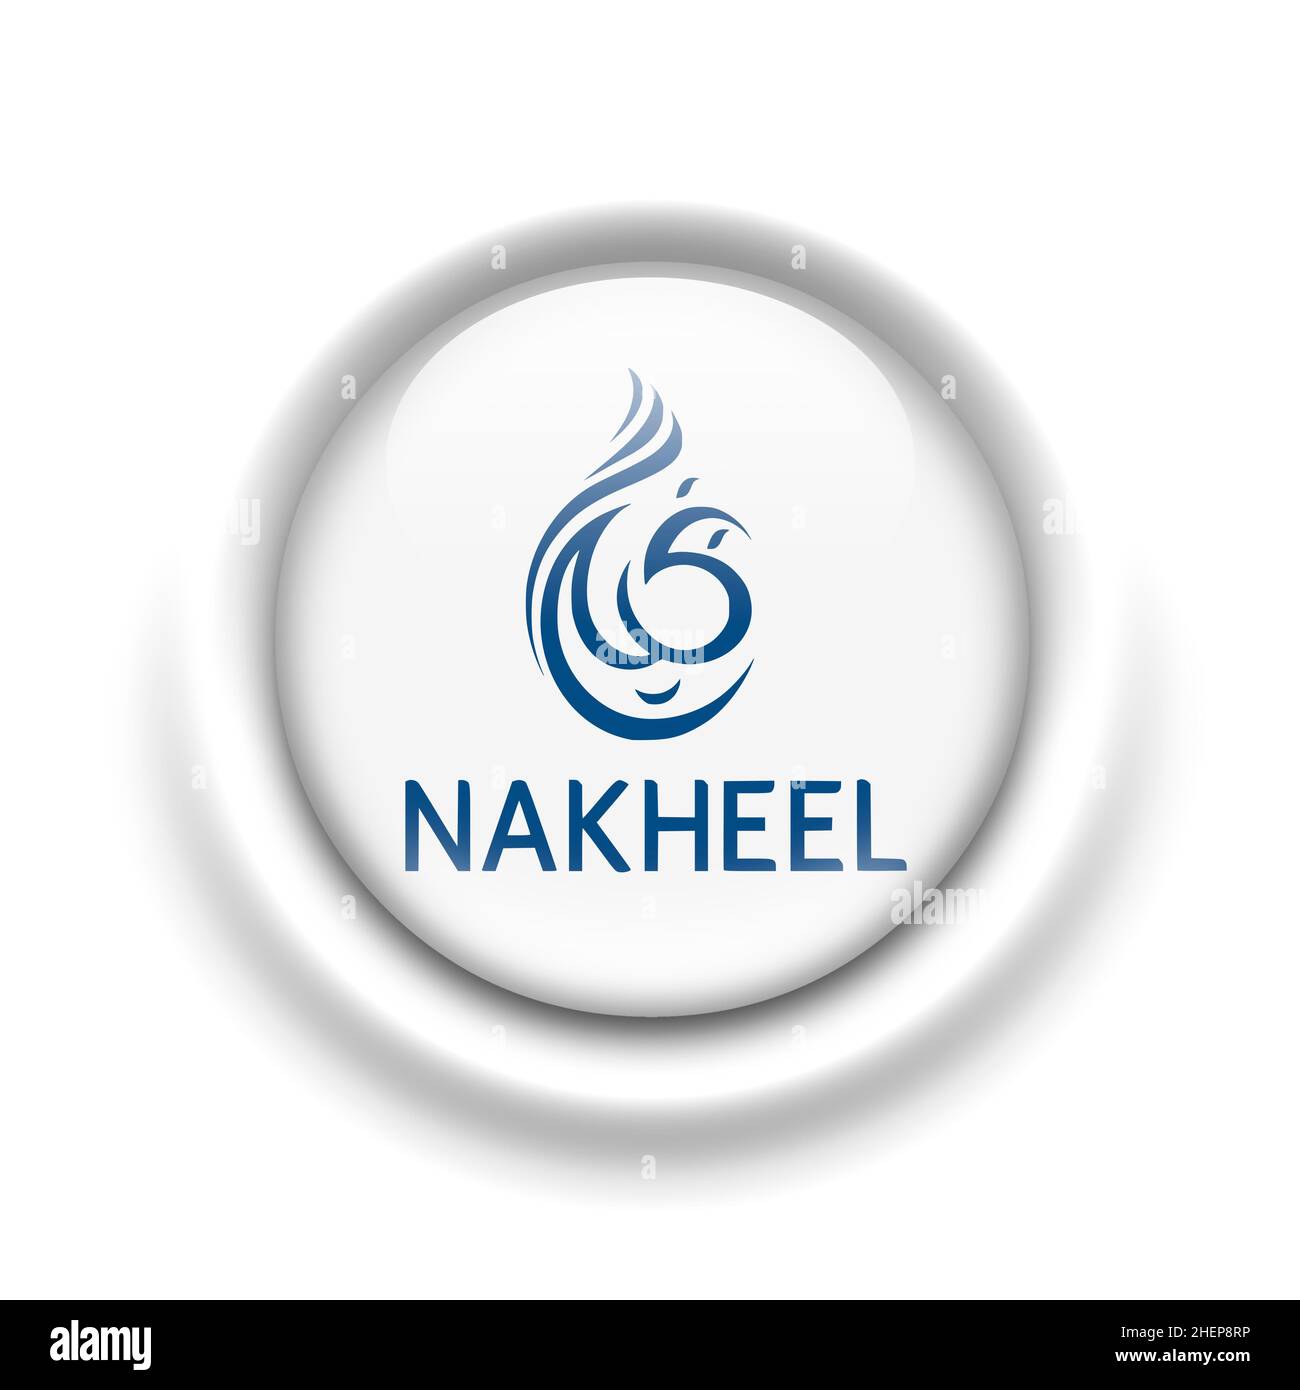 Nakheel logo Stock Photo